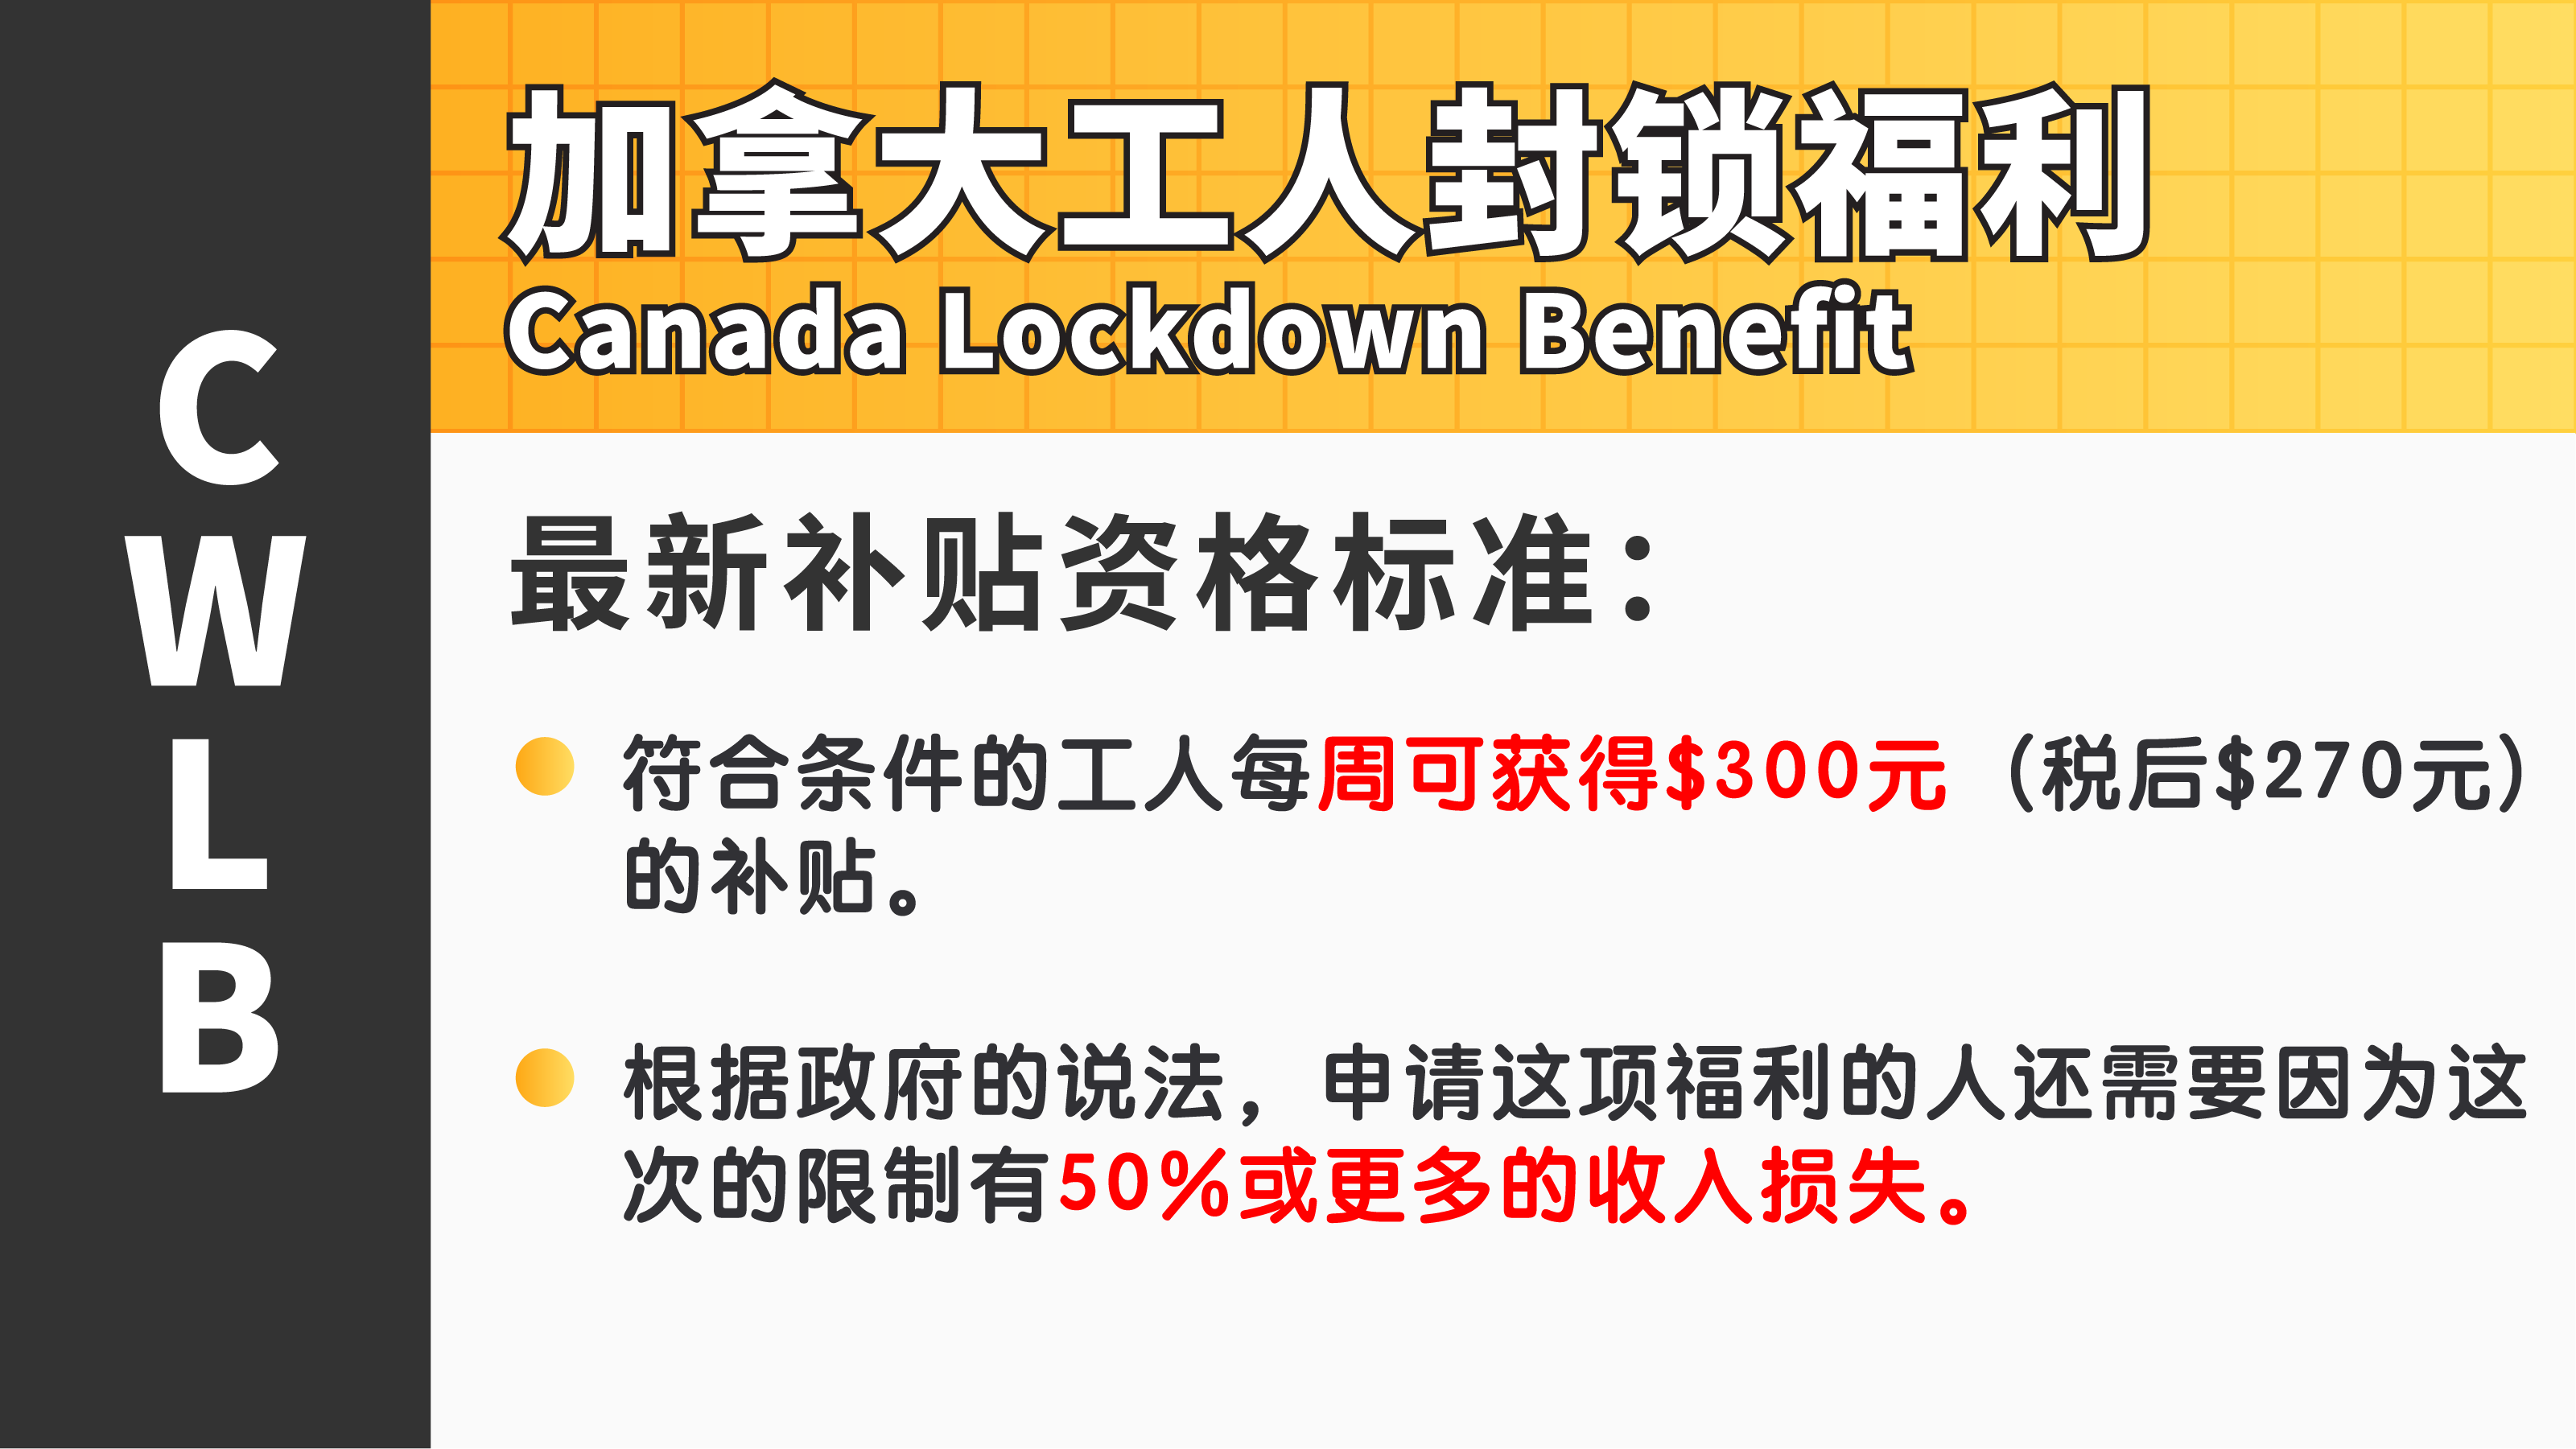 加拿大工人封锁福利 CWLB常见问题答疑(上)